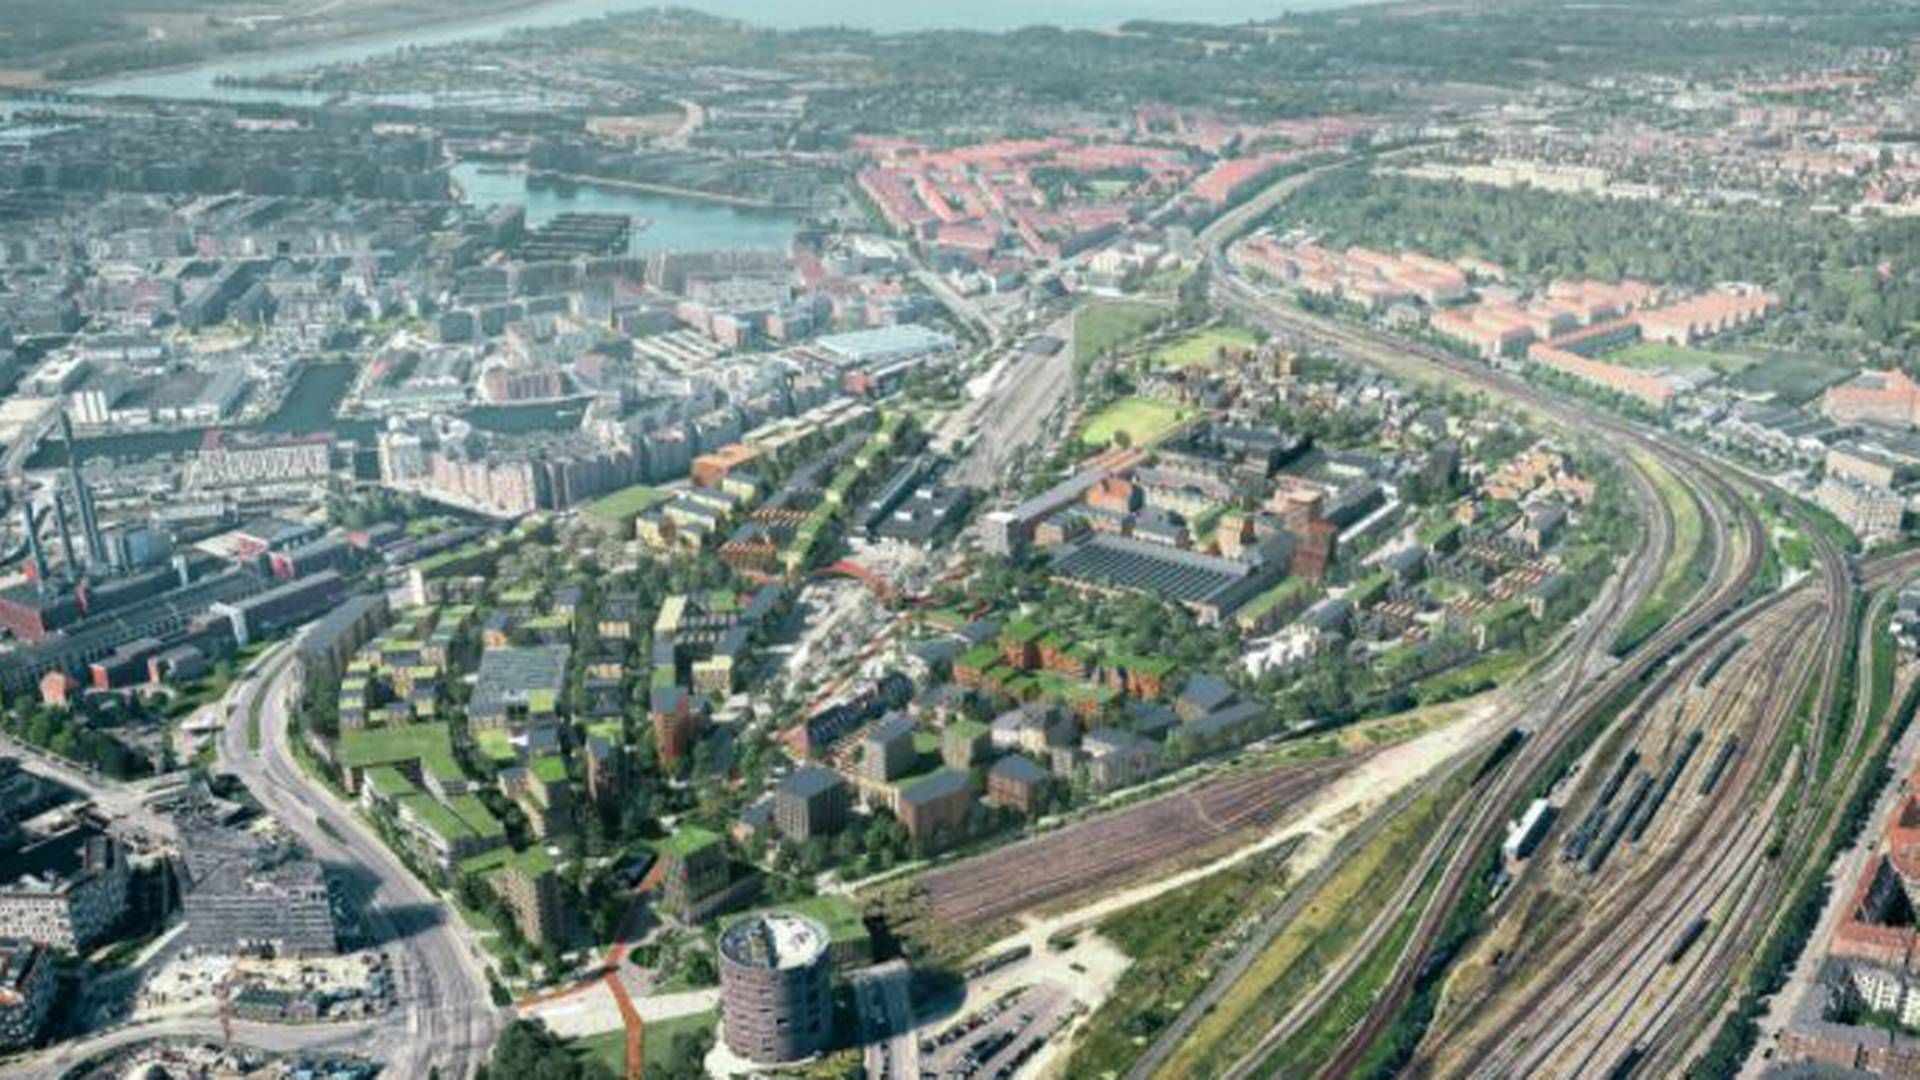 Jernbanebyen er placeret mellem Vasbygade, Enghavevej og Ingerslevsgade i København. | Foto: PR-visualisering / Cobe